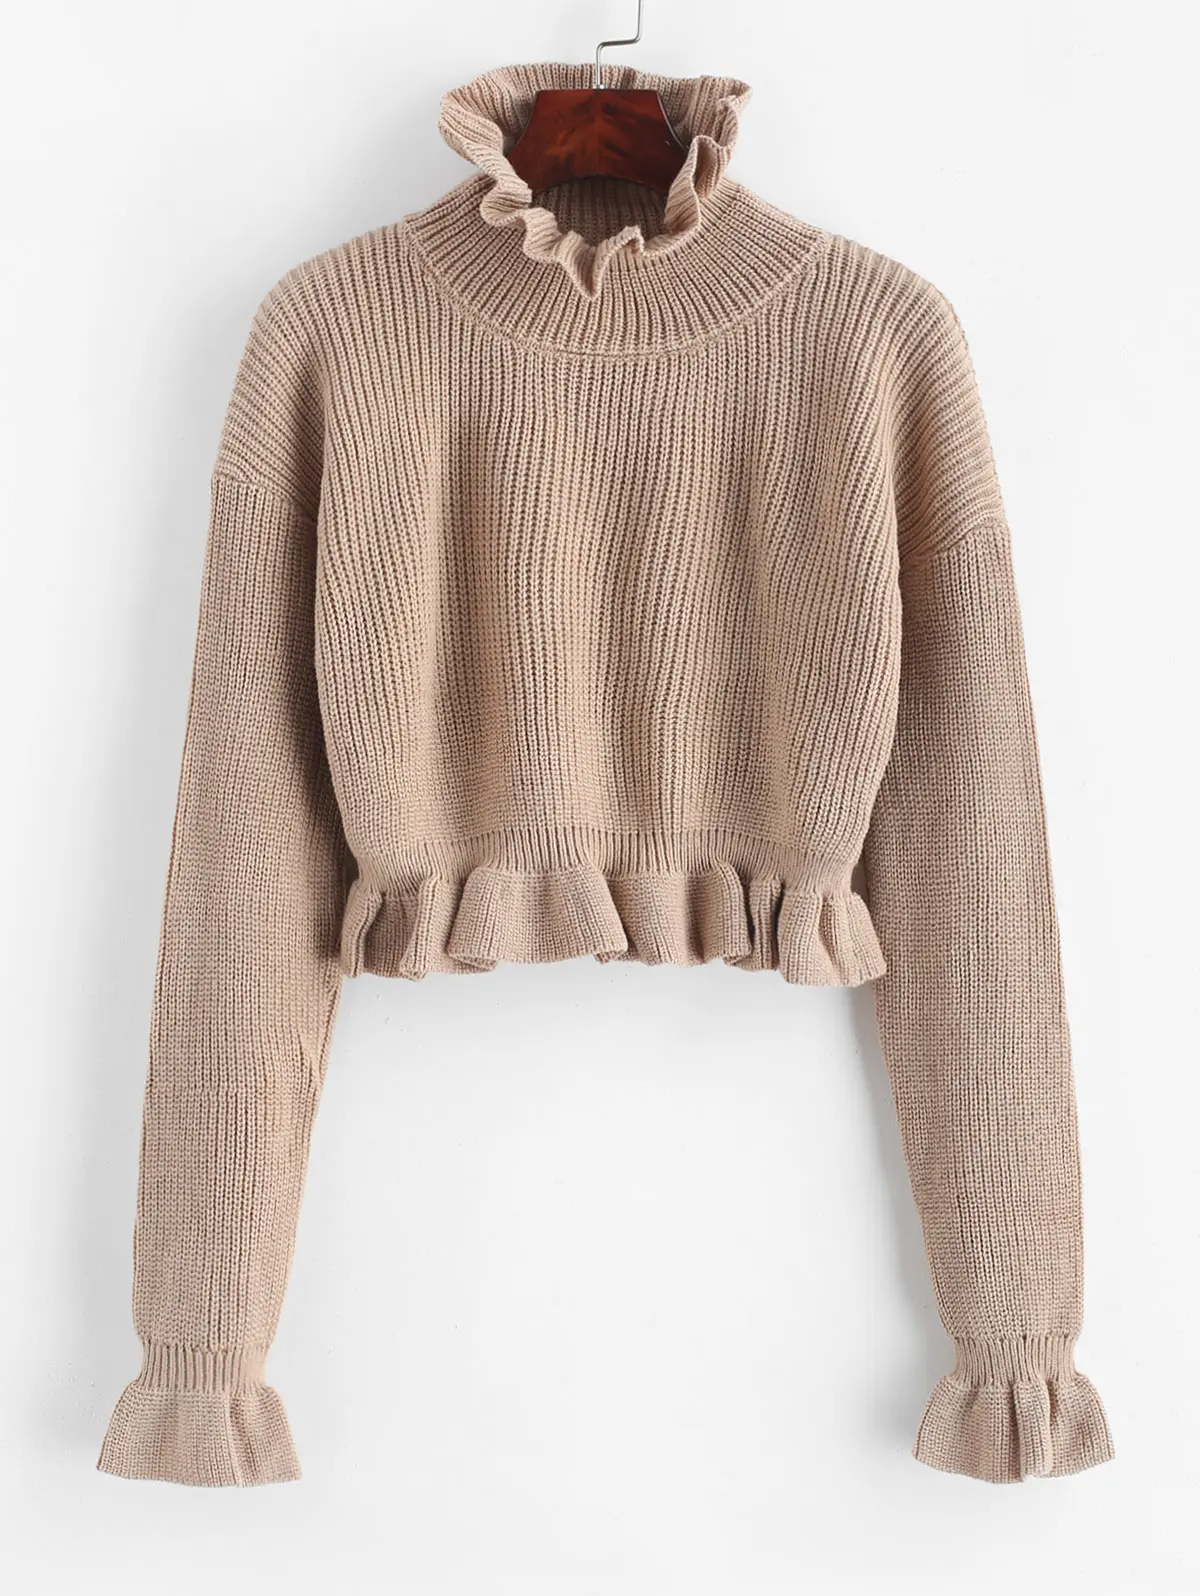 ZAFUL Однотонный свитер с оборками осень зима Повседневный короткий пуловер Повседневный эластичный свитер обрезанный женский свитер - Цвет: Camel Brown